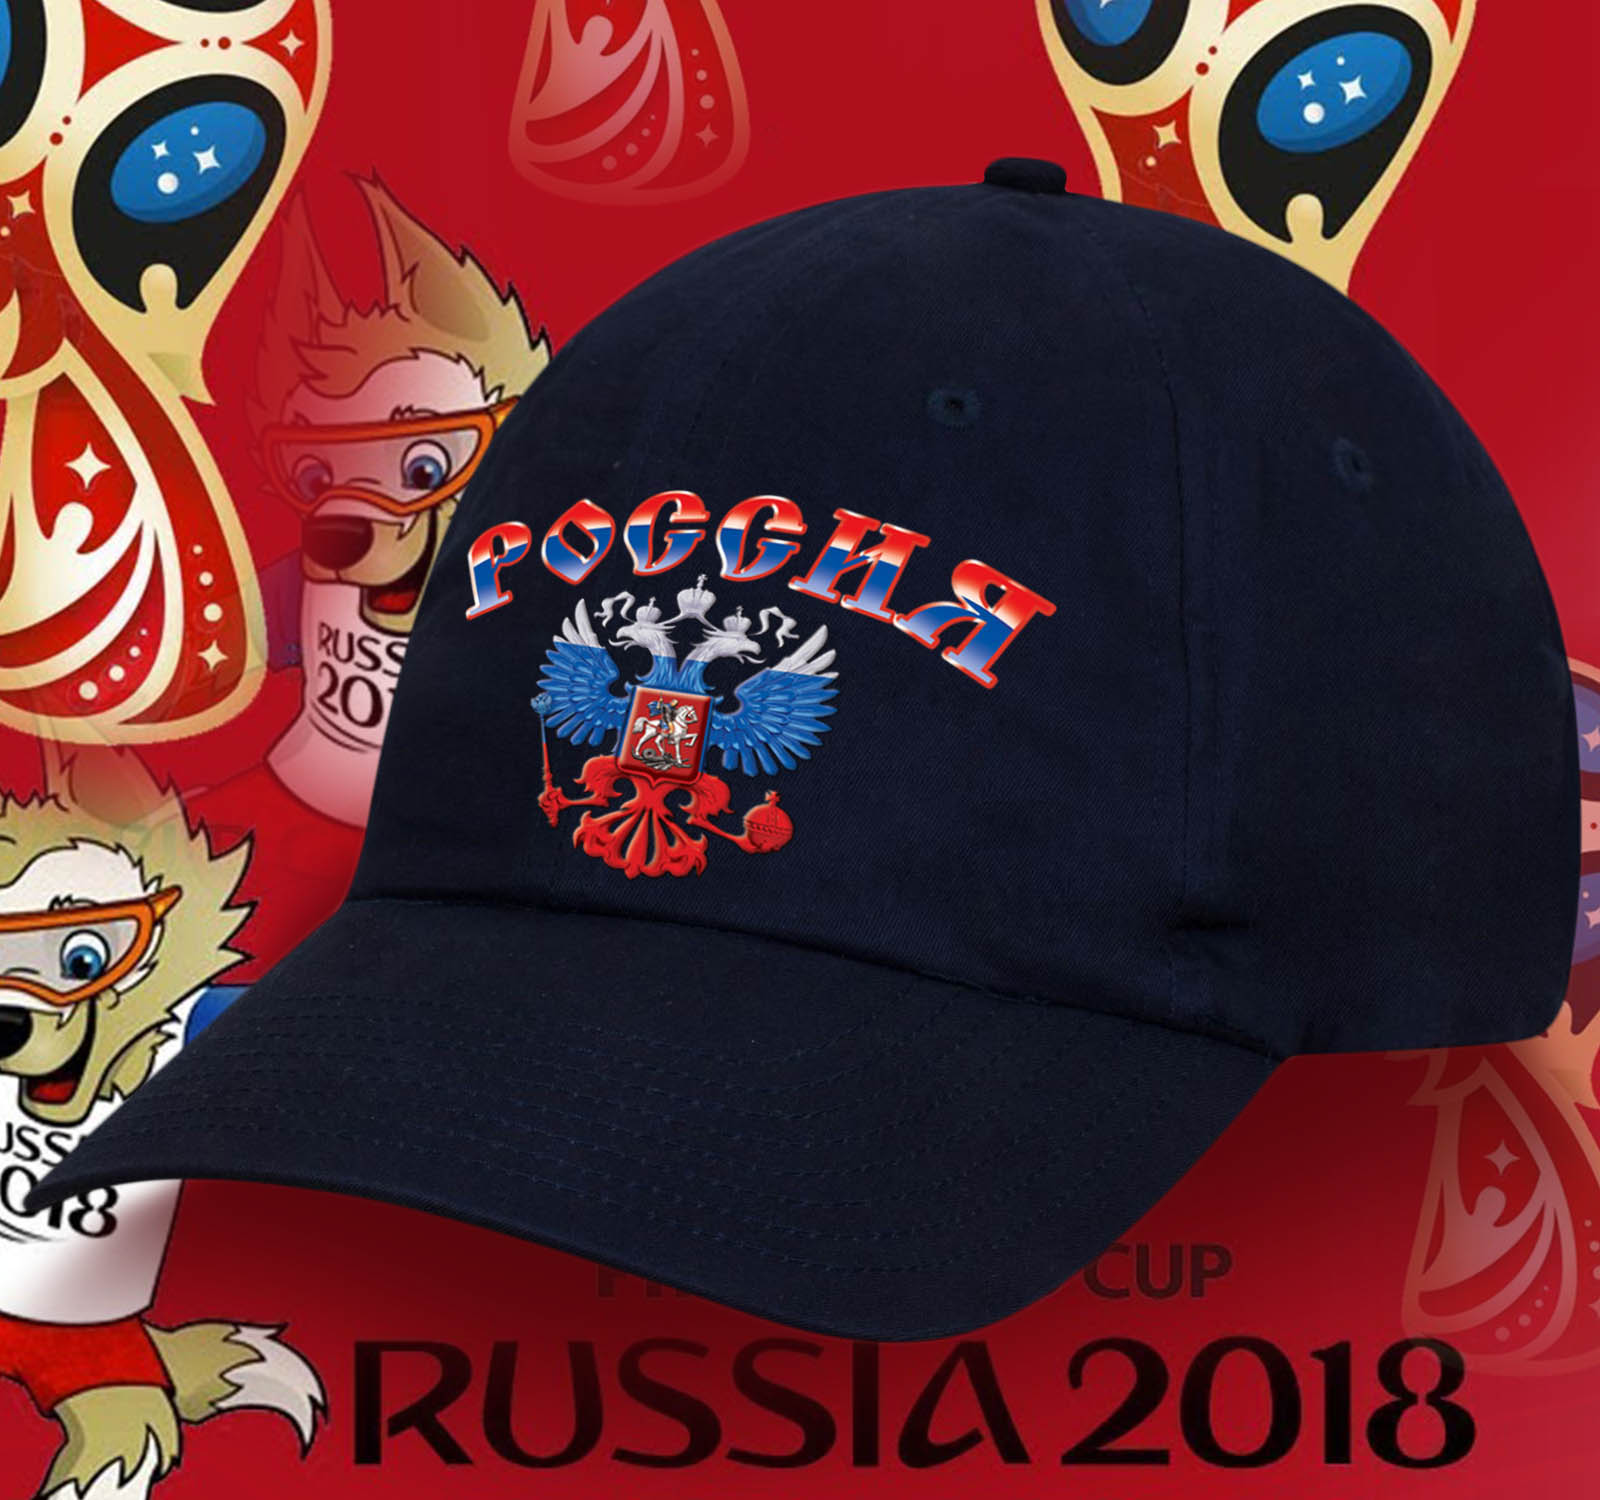 Кепка "Россия" с принтованным Гербом в цветах триколора - приобретая у нас головные уборы, Вы можете быть уверены в качестве. ОСТАТКИ СЛАДКИ!!!! №тр700